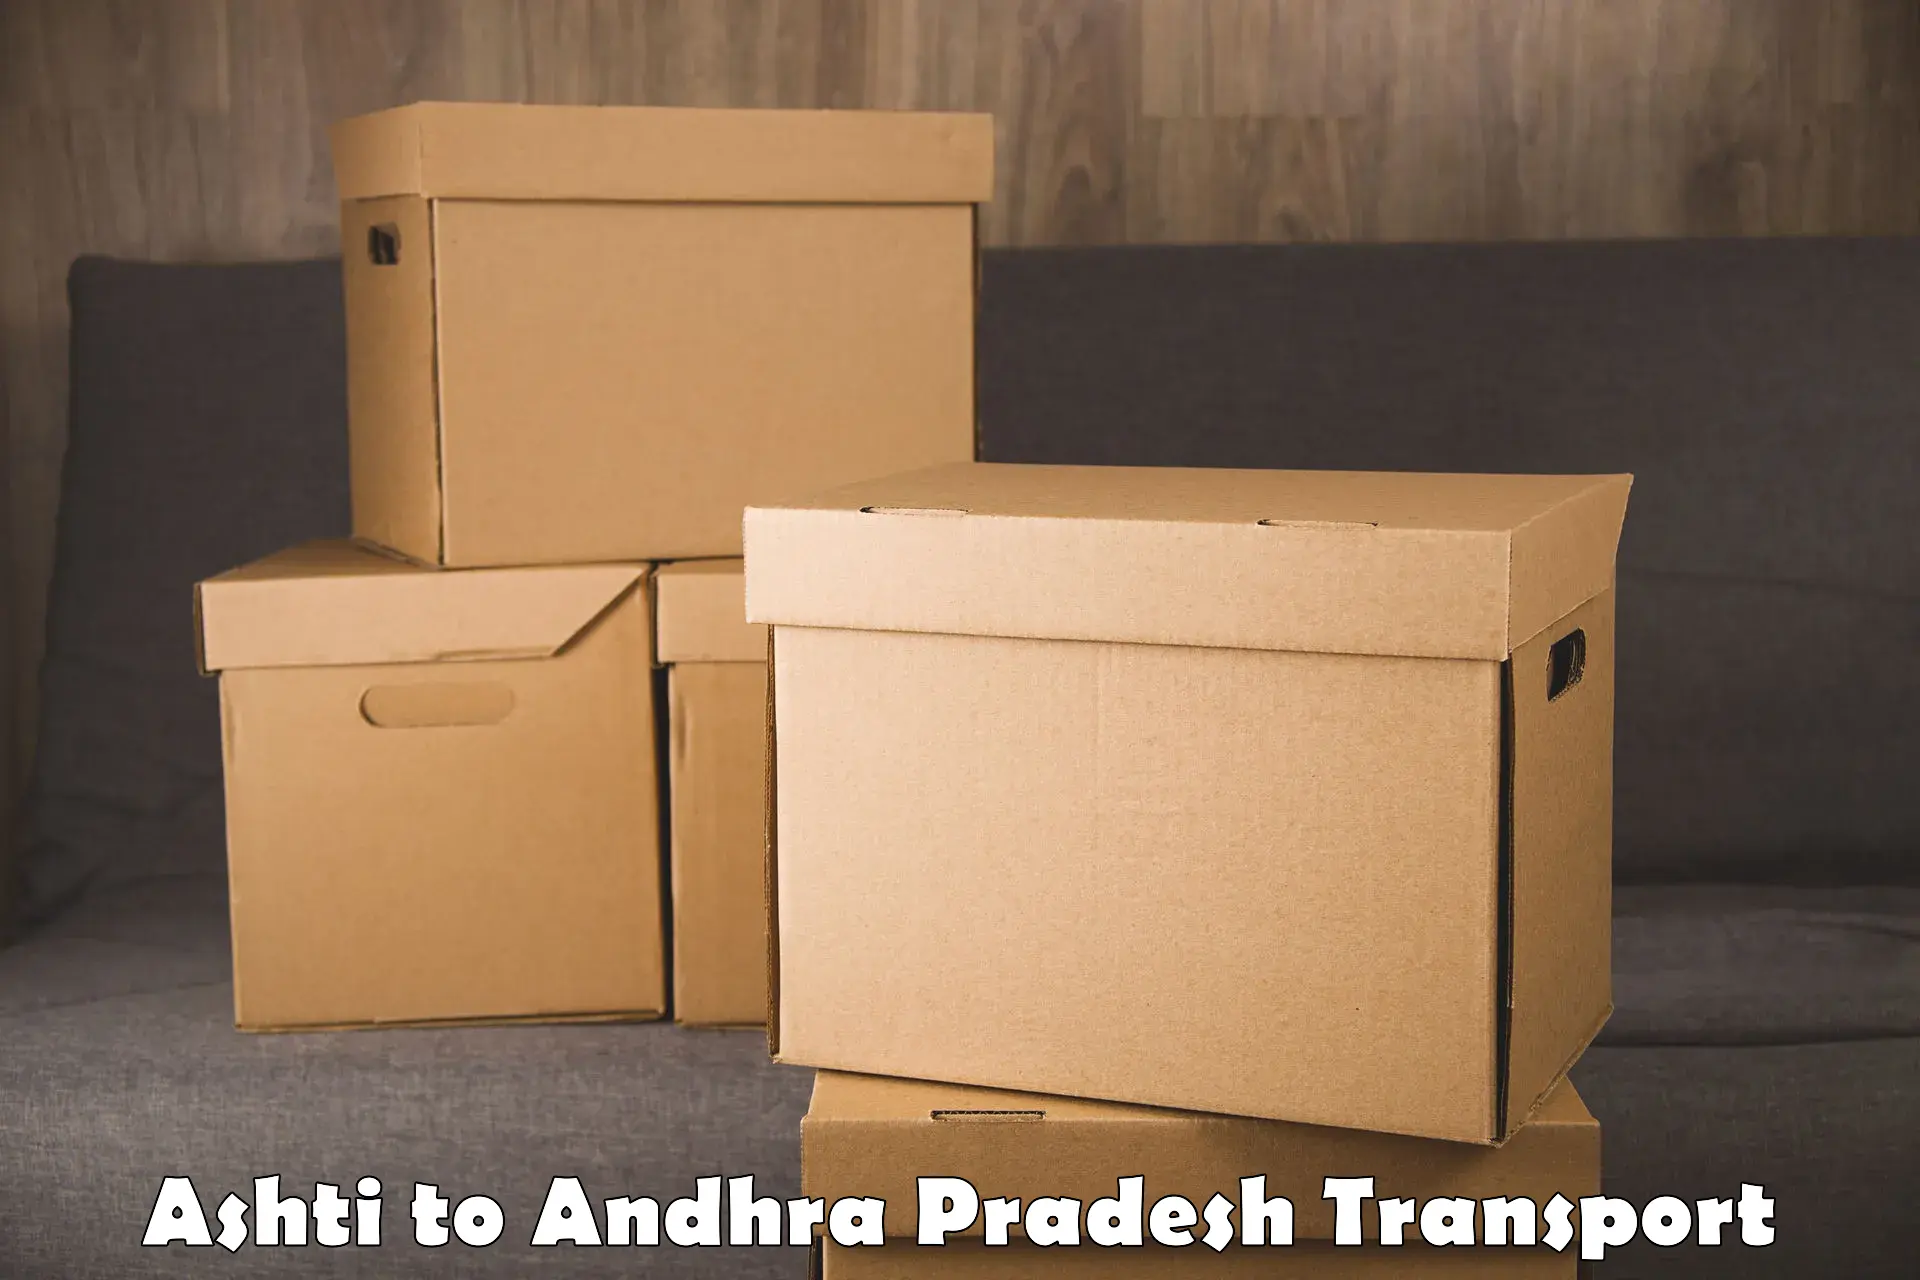 Logistics transportation services Ashti to Tirupati